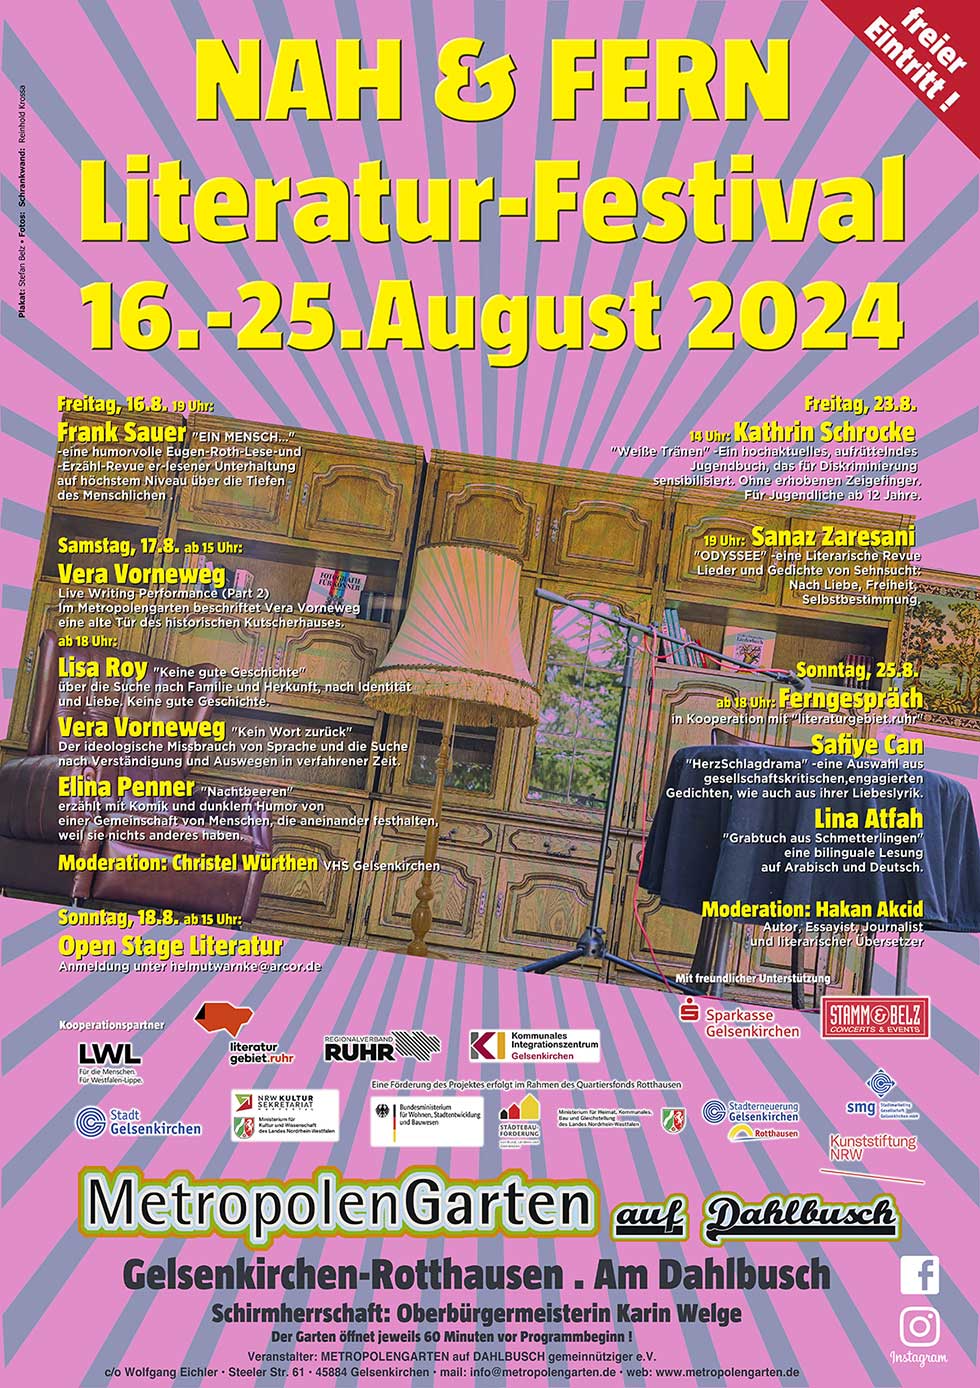 Nah & Fern Literaturfestival 2024, 16. - 25. August 2024 im Metropolengarten auf Dahlbusch, Gelsenkirchen